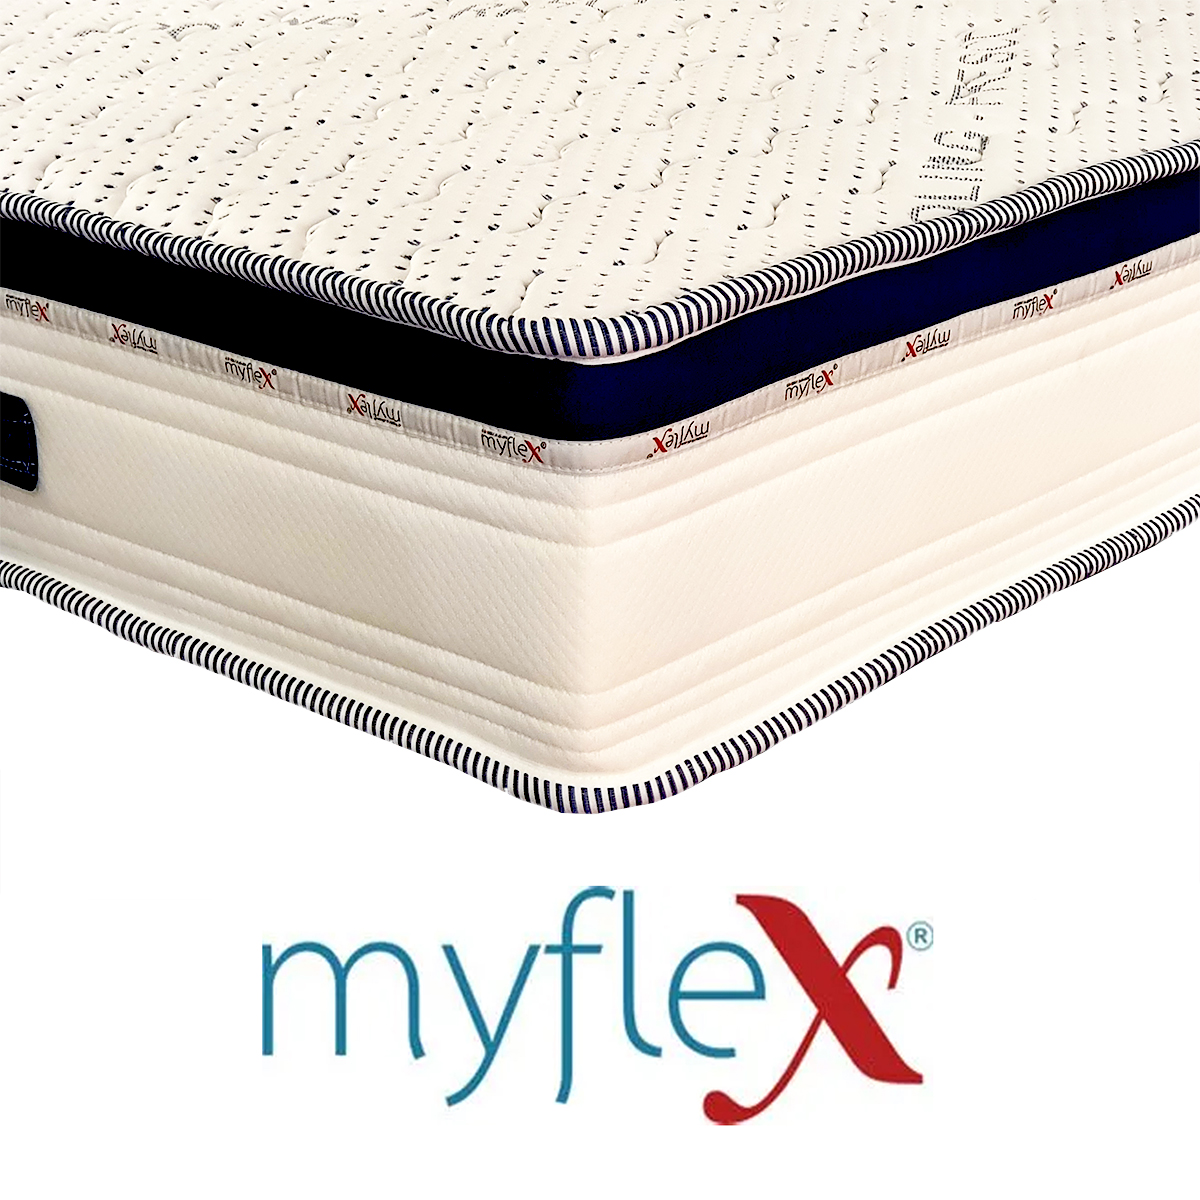 myflex Hypnos Cooling Mattress